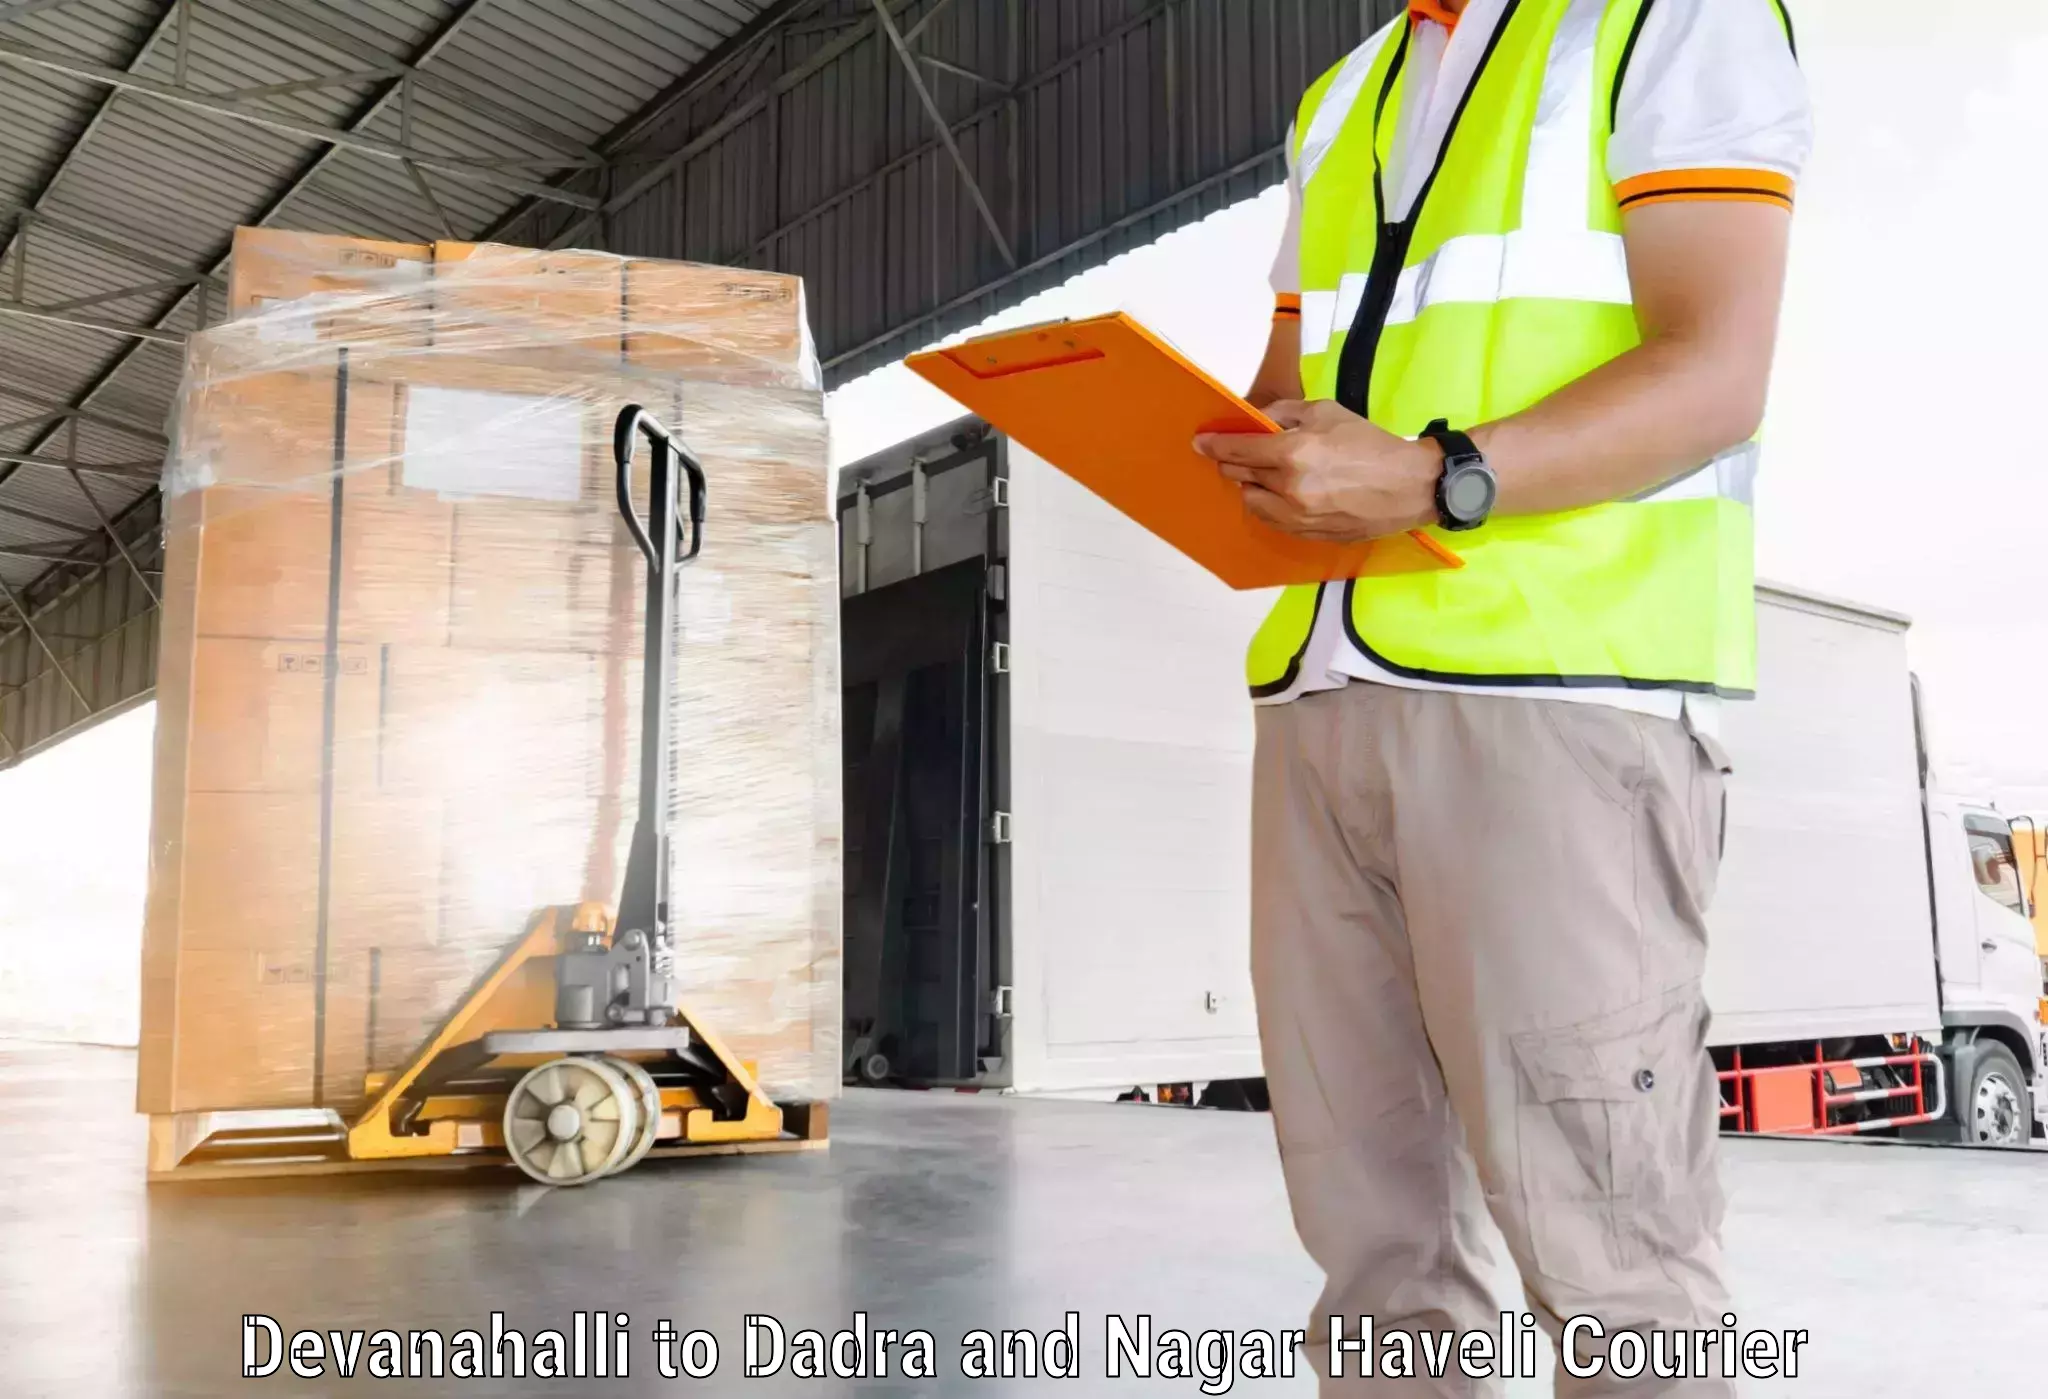 Cargo courier service in Devanahalli to Silvassa